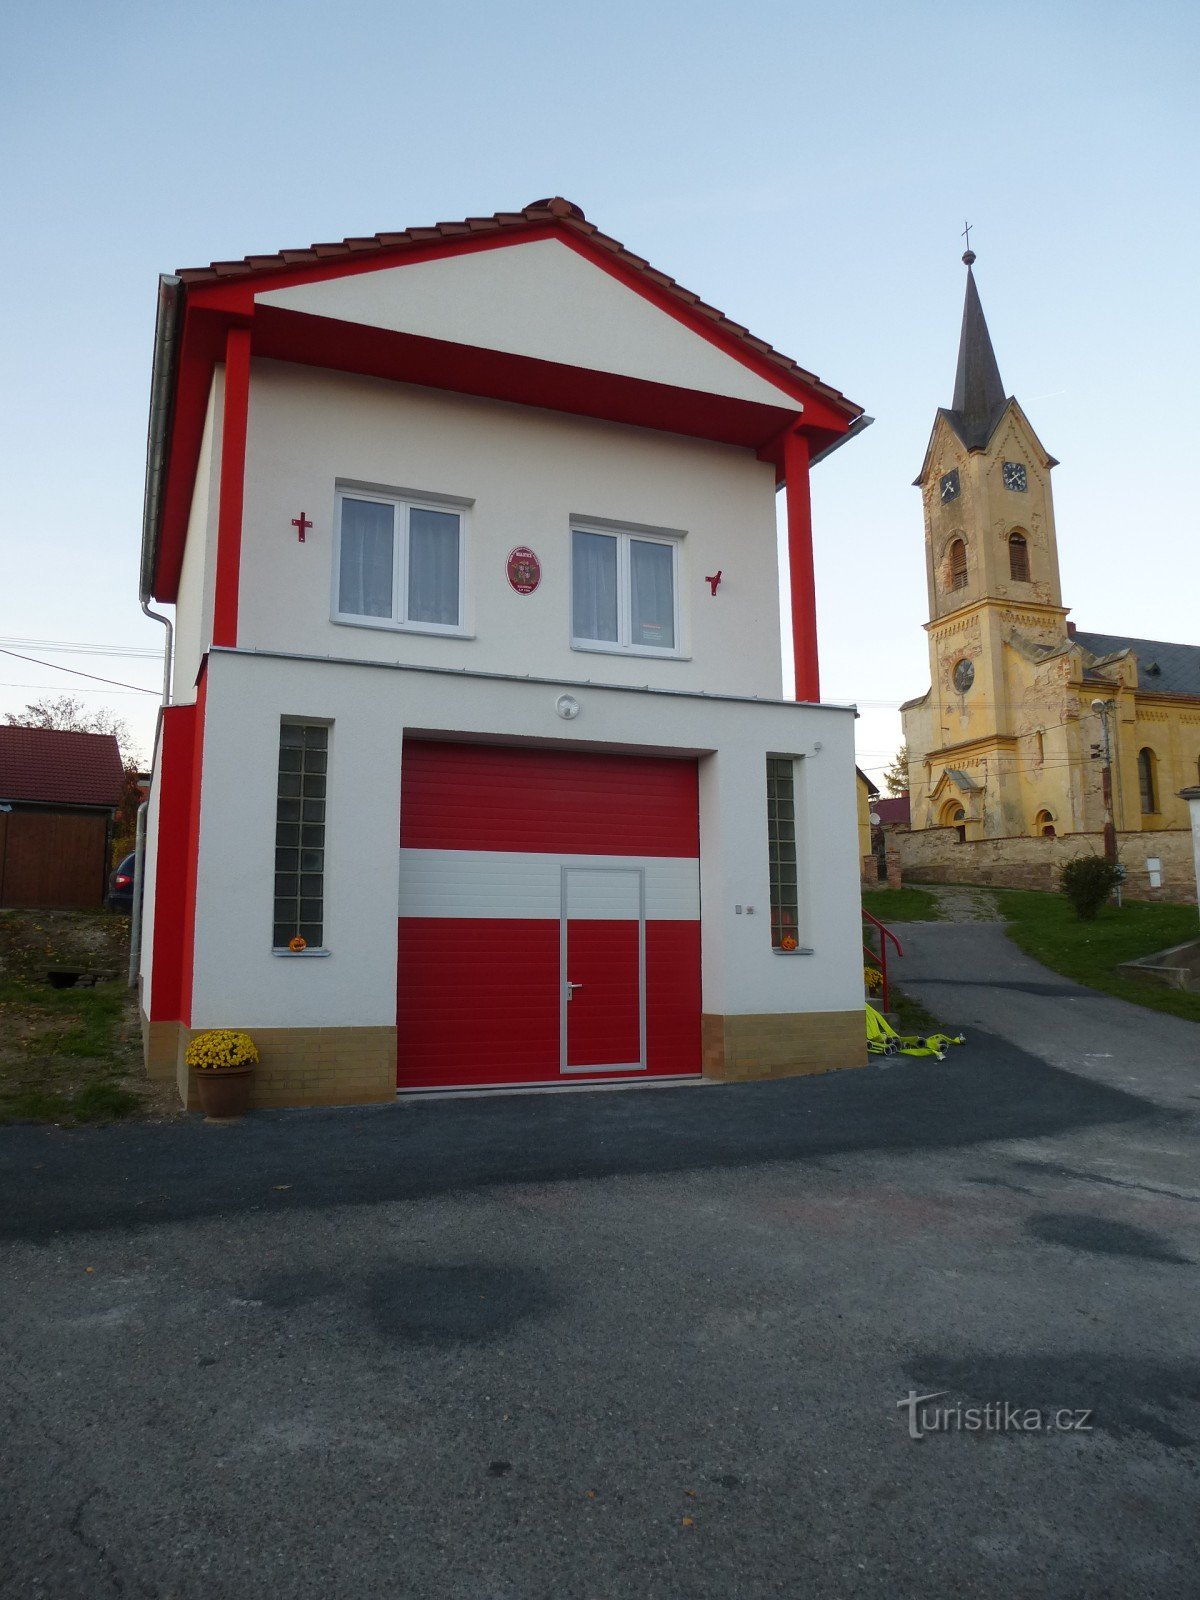 消防局和圣教堂马修